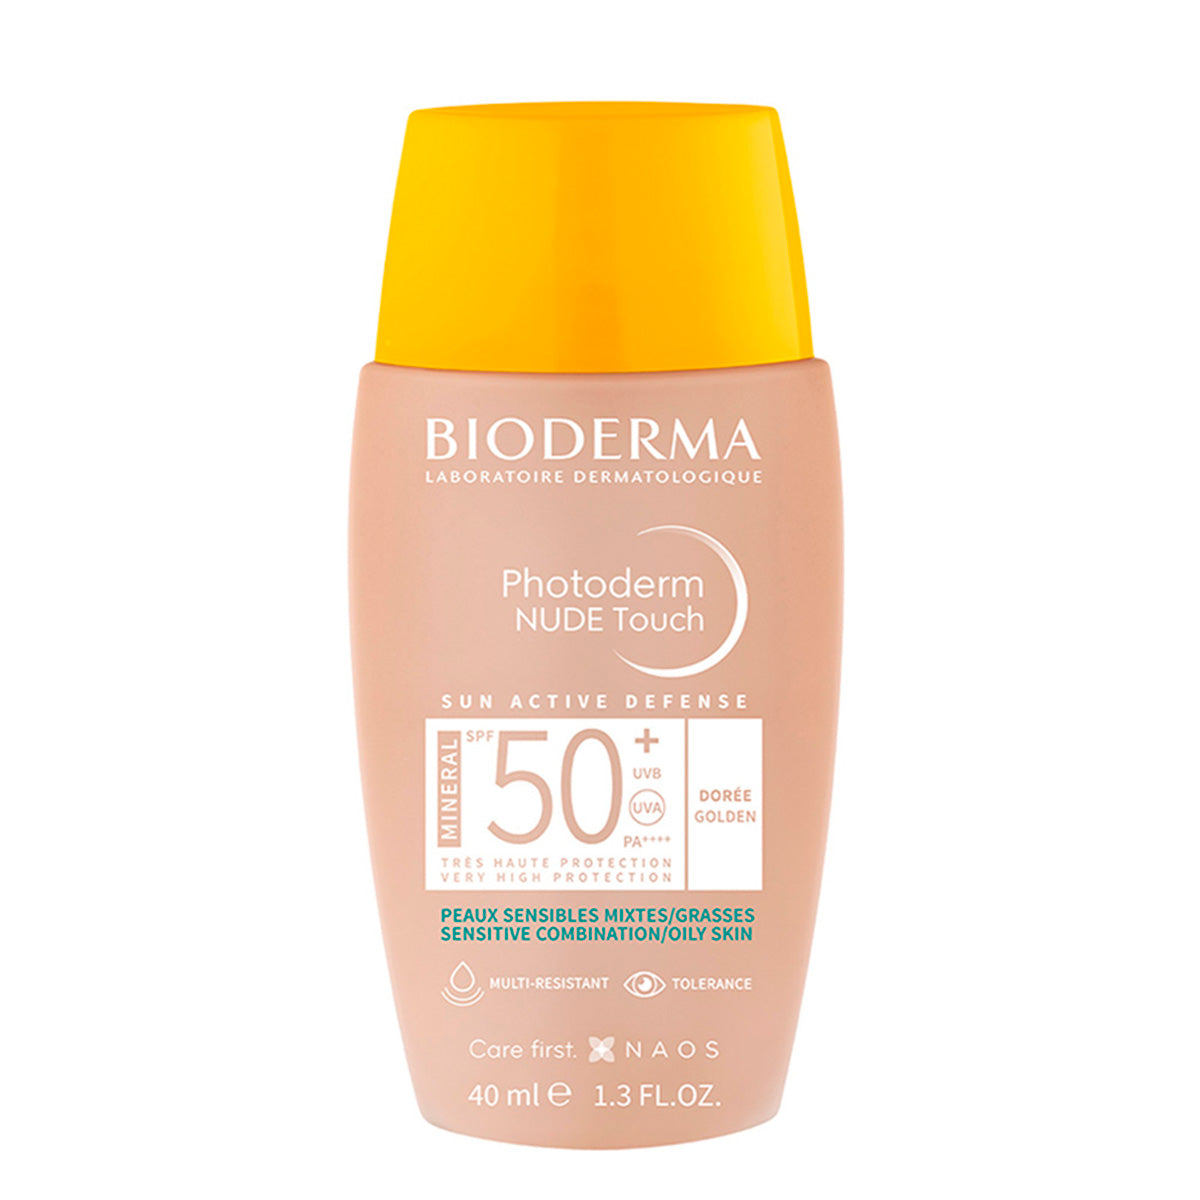 Bioderma Photoderm Nude Touch FPS 50+ Tono Dorado, Protección solar facial, 40ml